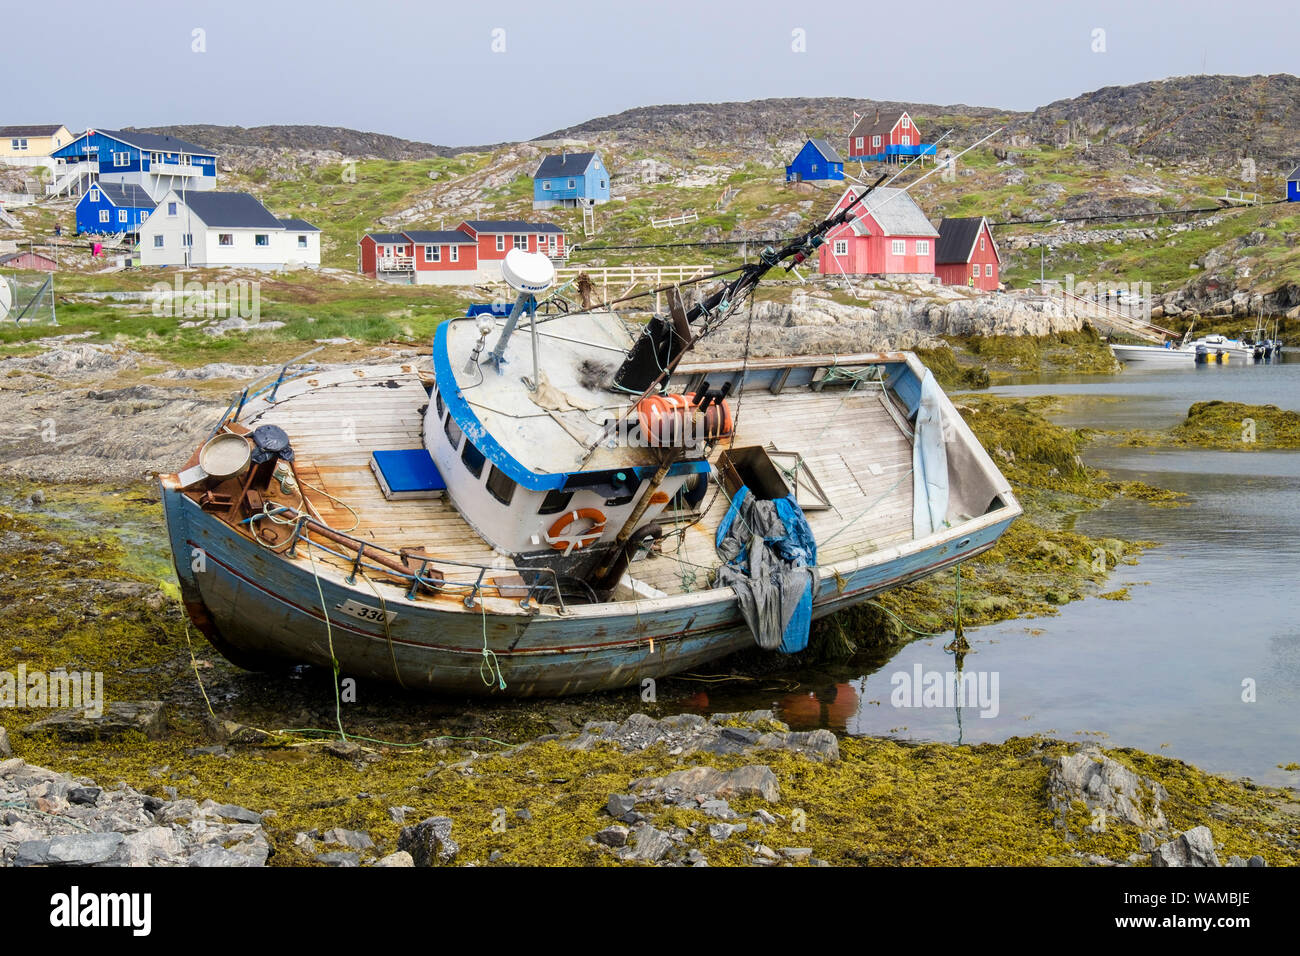 Strände altes Fischerboot am Meer im Dorf Hafen mit traditionellen Holzhäusern auf der Insel Hang. Itilleq, Qeqqata, Grönland Stockfoto